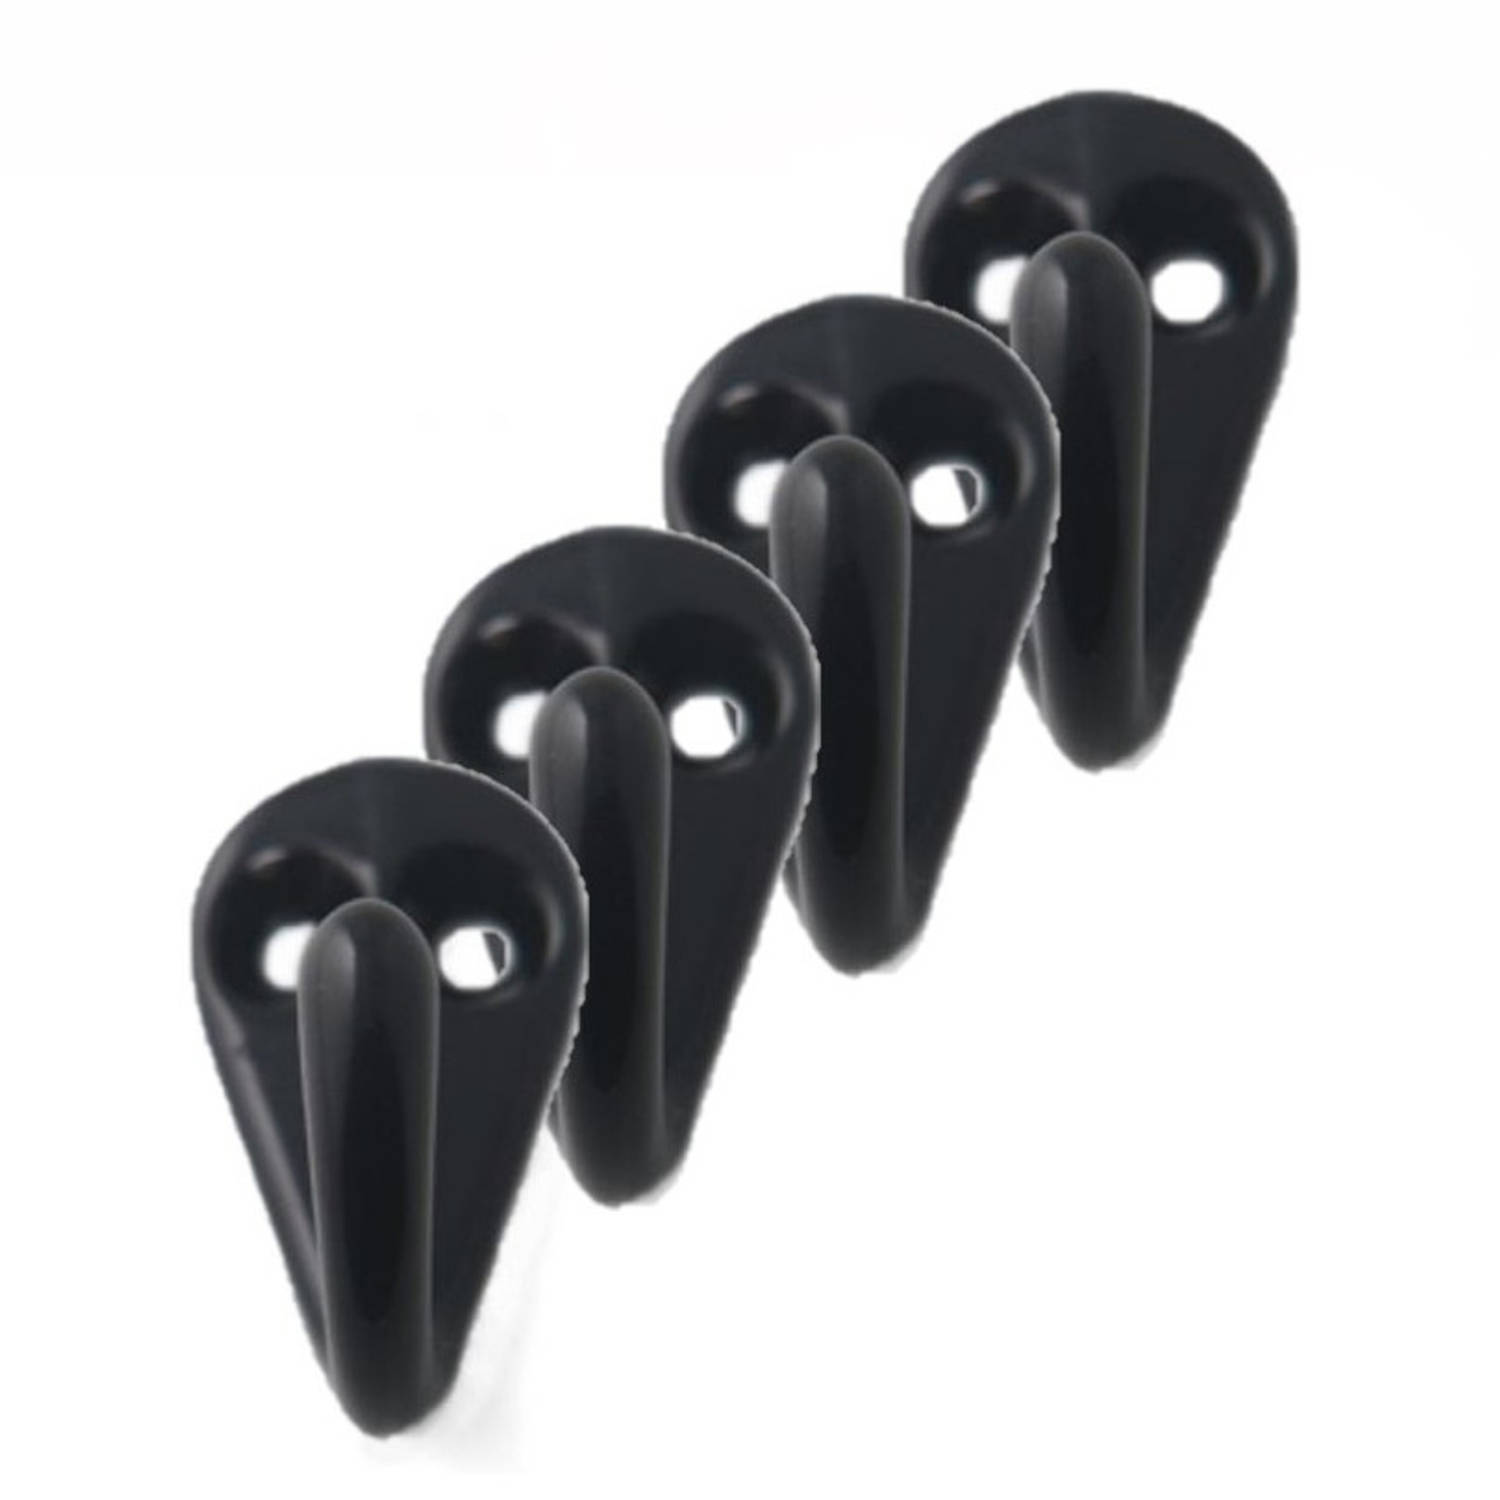 8x Zwarte garderobe haakjes-jashaken-kapstokhaakjes aluminium enkele haak 3,6 x 1,9 cm Kapstokhaken